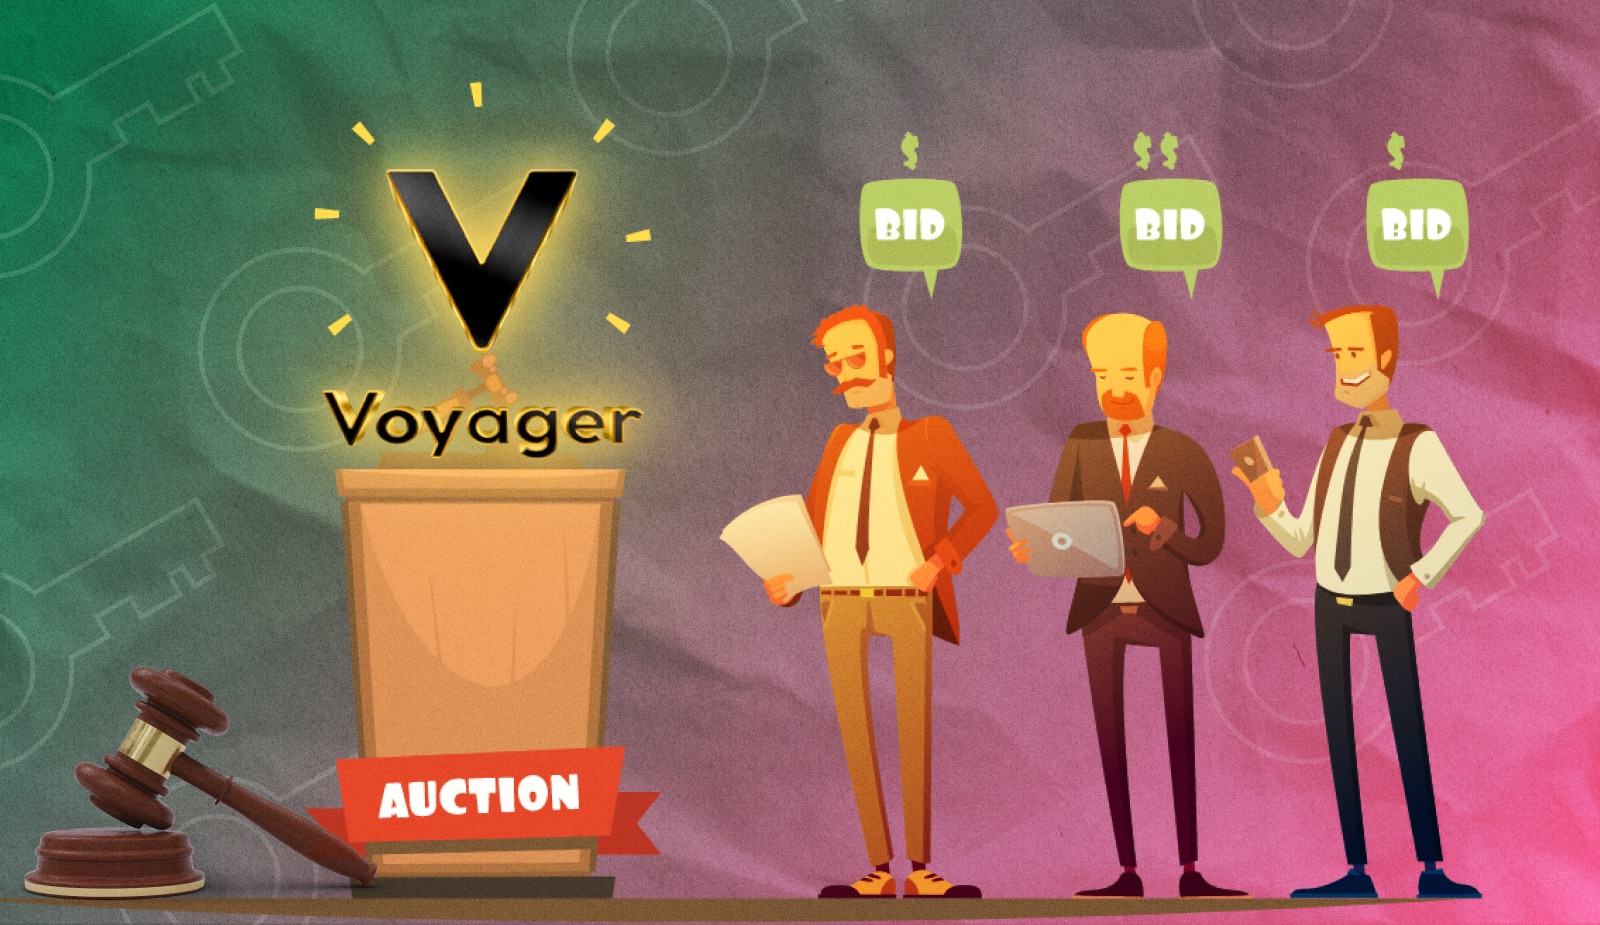 В конце сентября активы Voyager уйдут с молотка. Кто среди главных претендентов на этот куш? Заглавный коллаж новости.